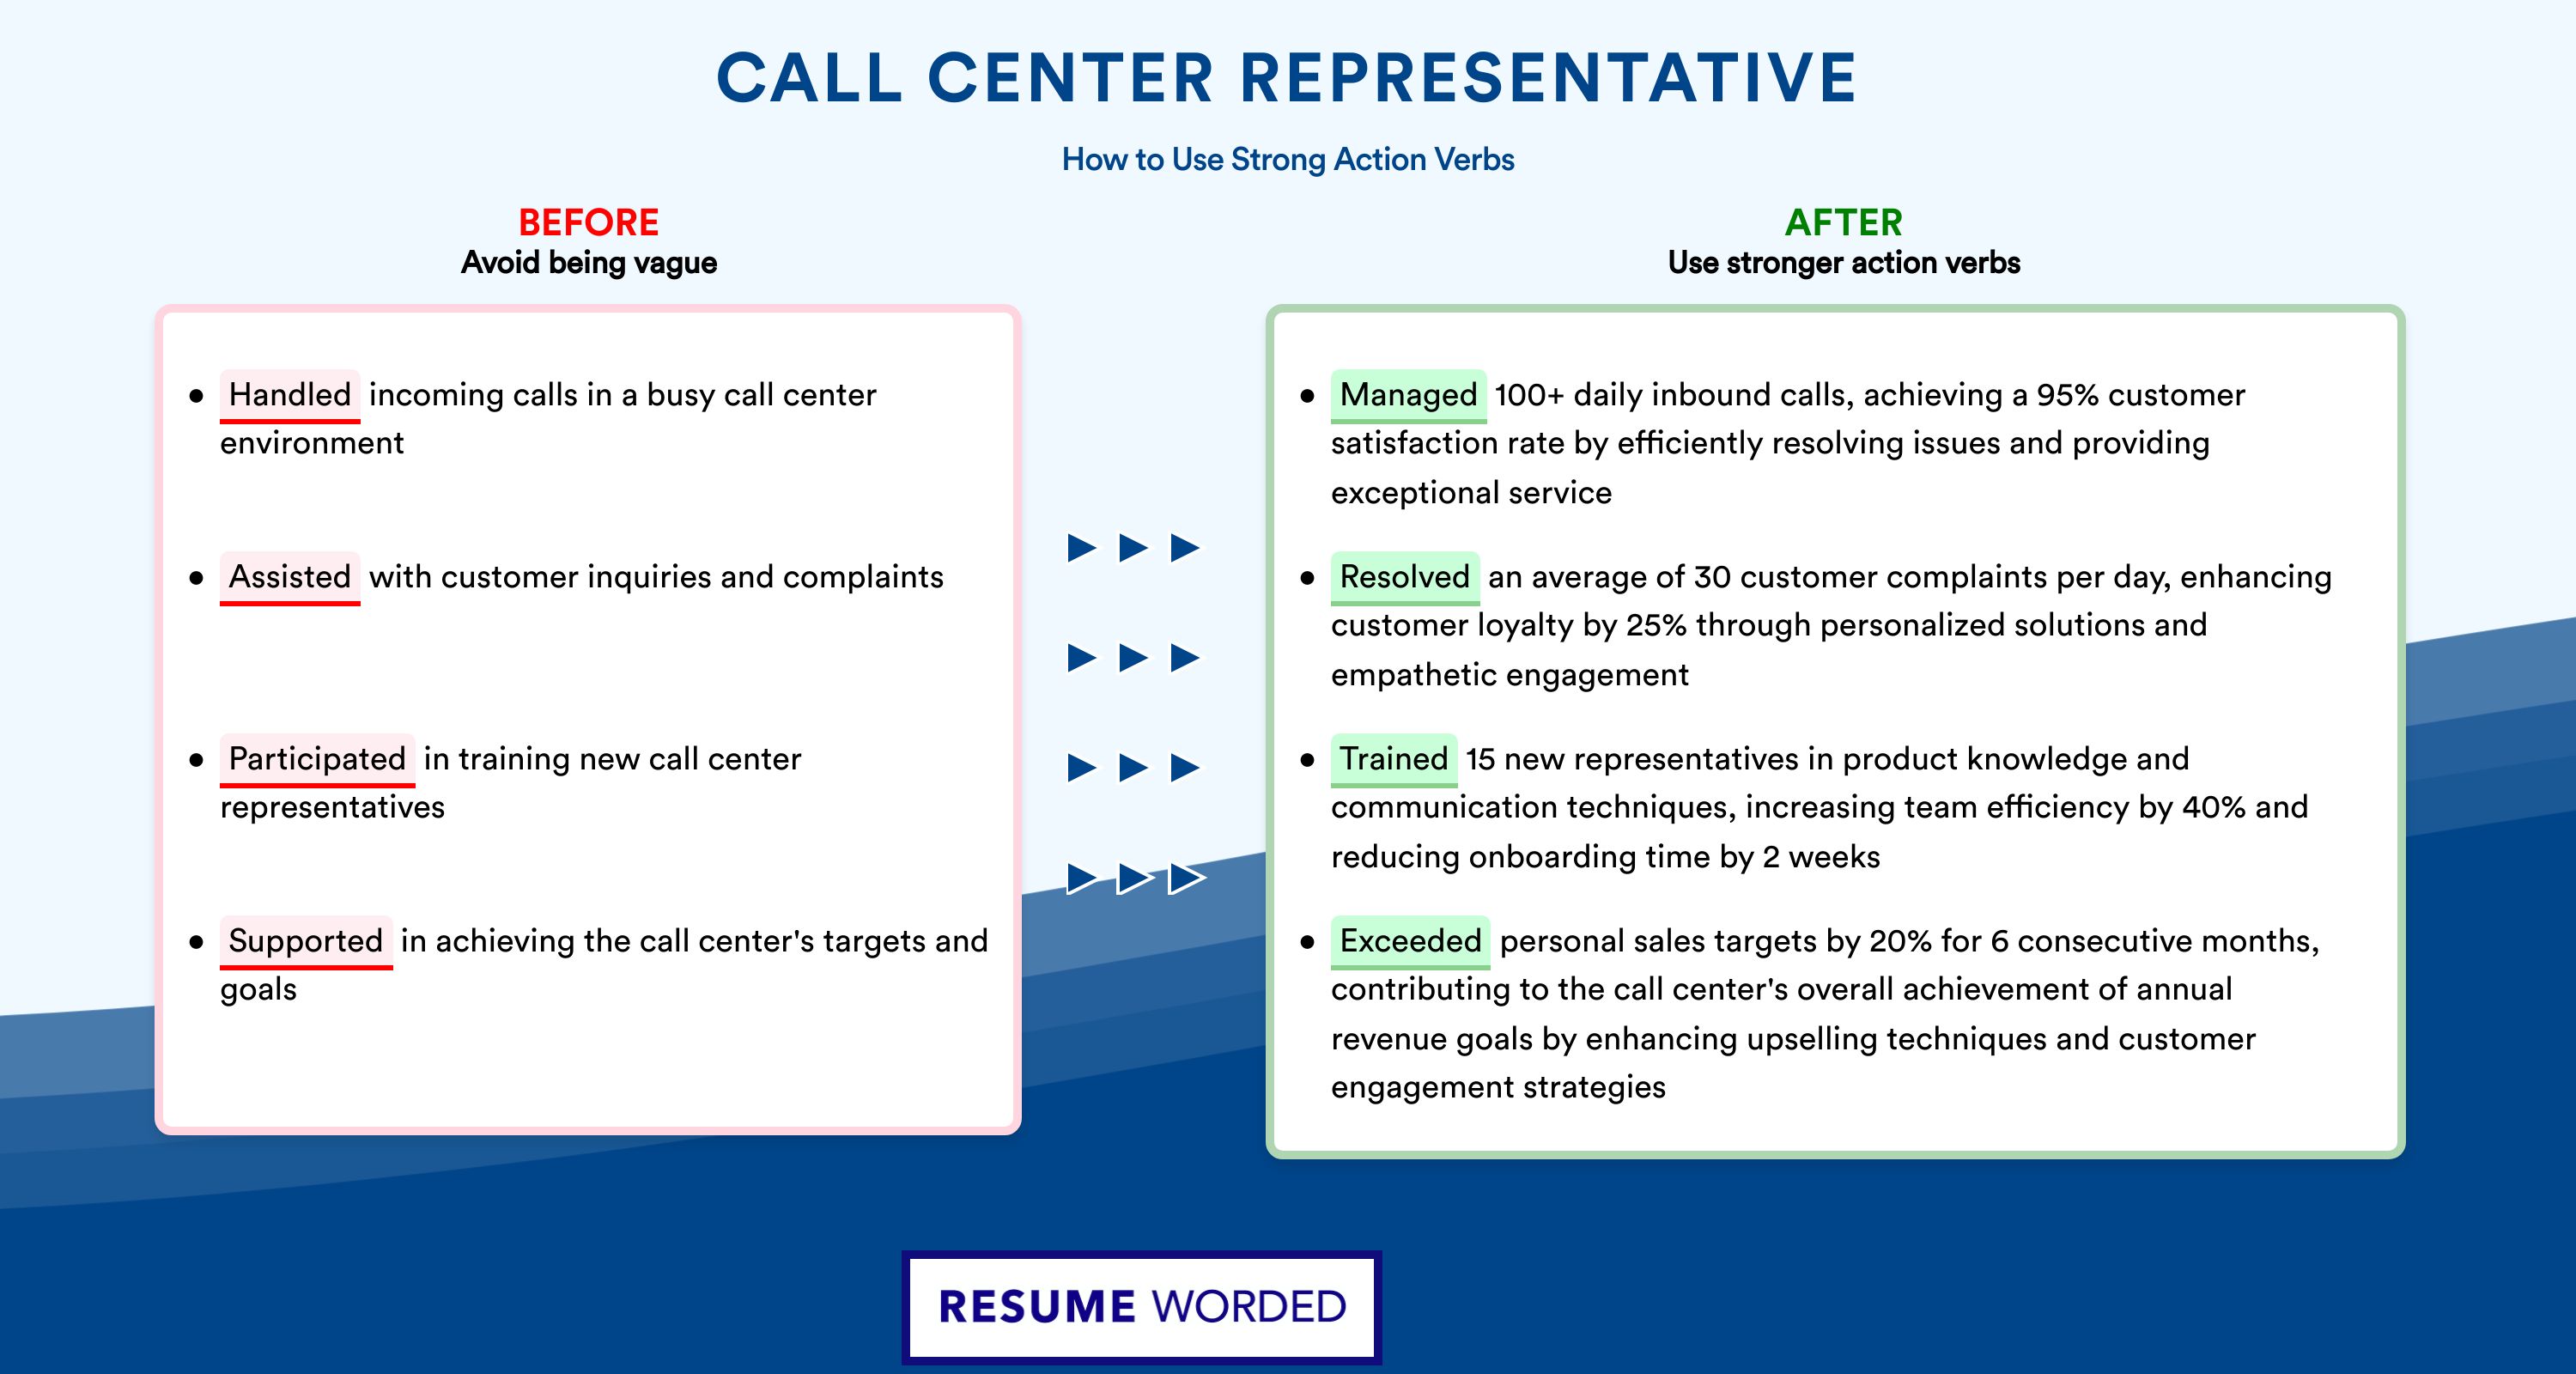 Action Verbs for Call Center Representative